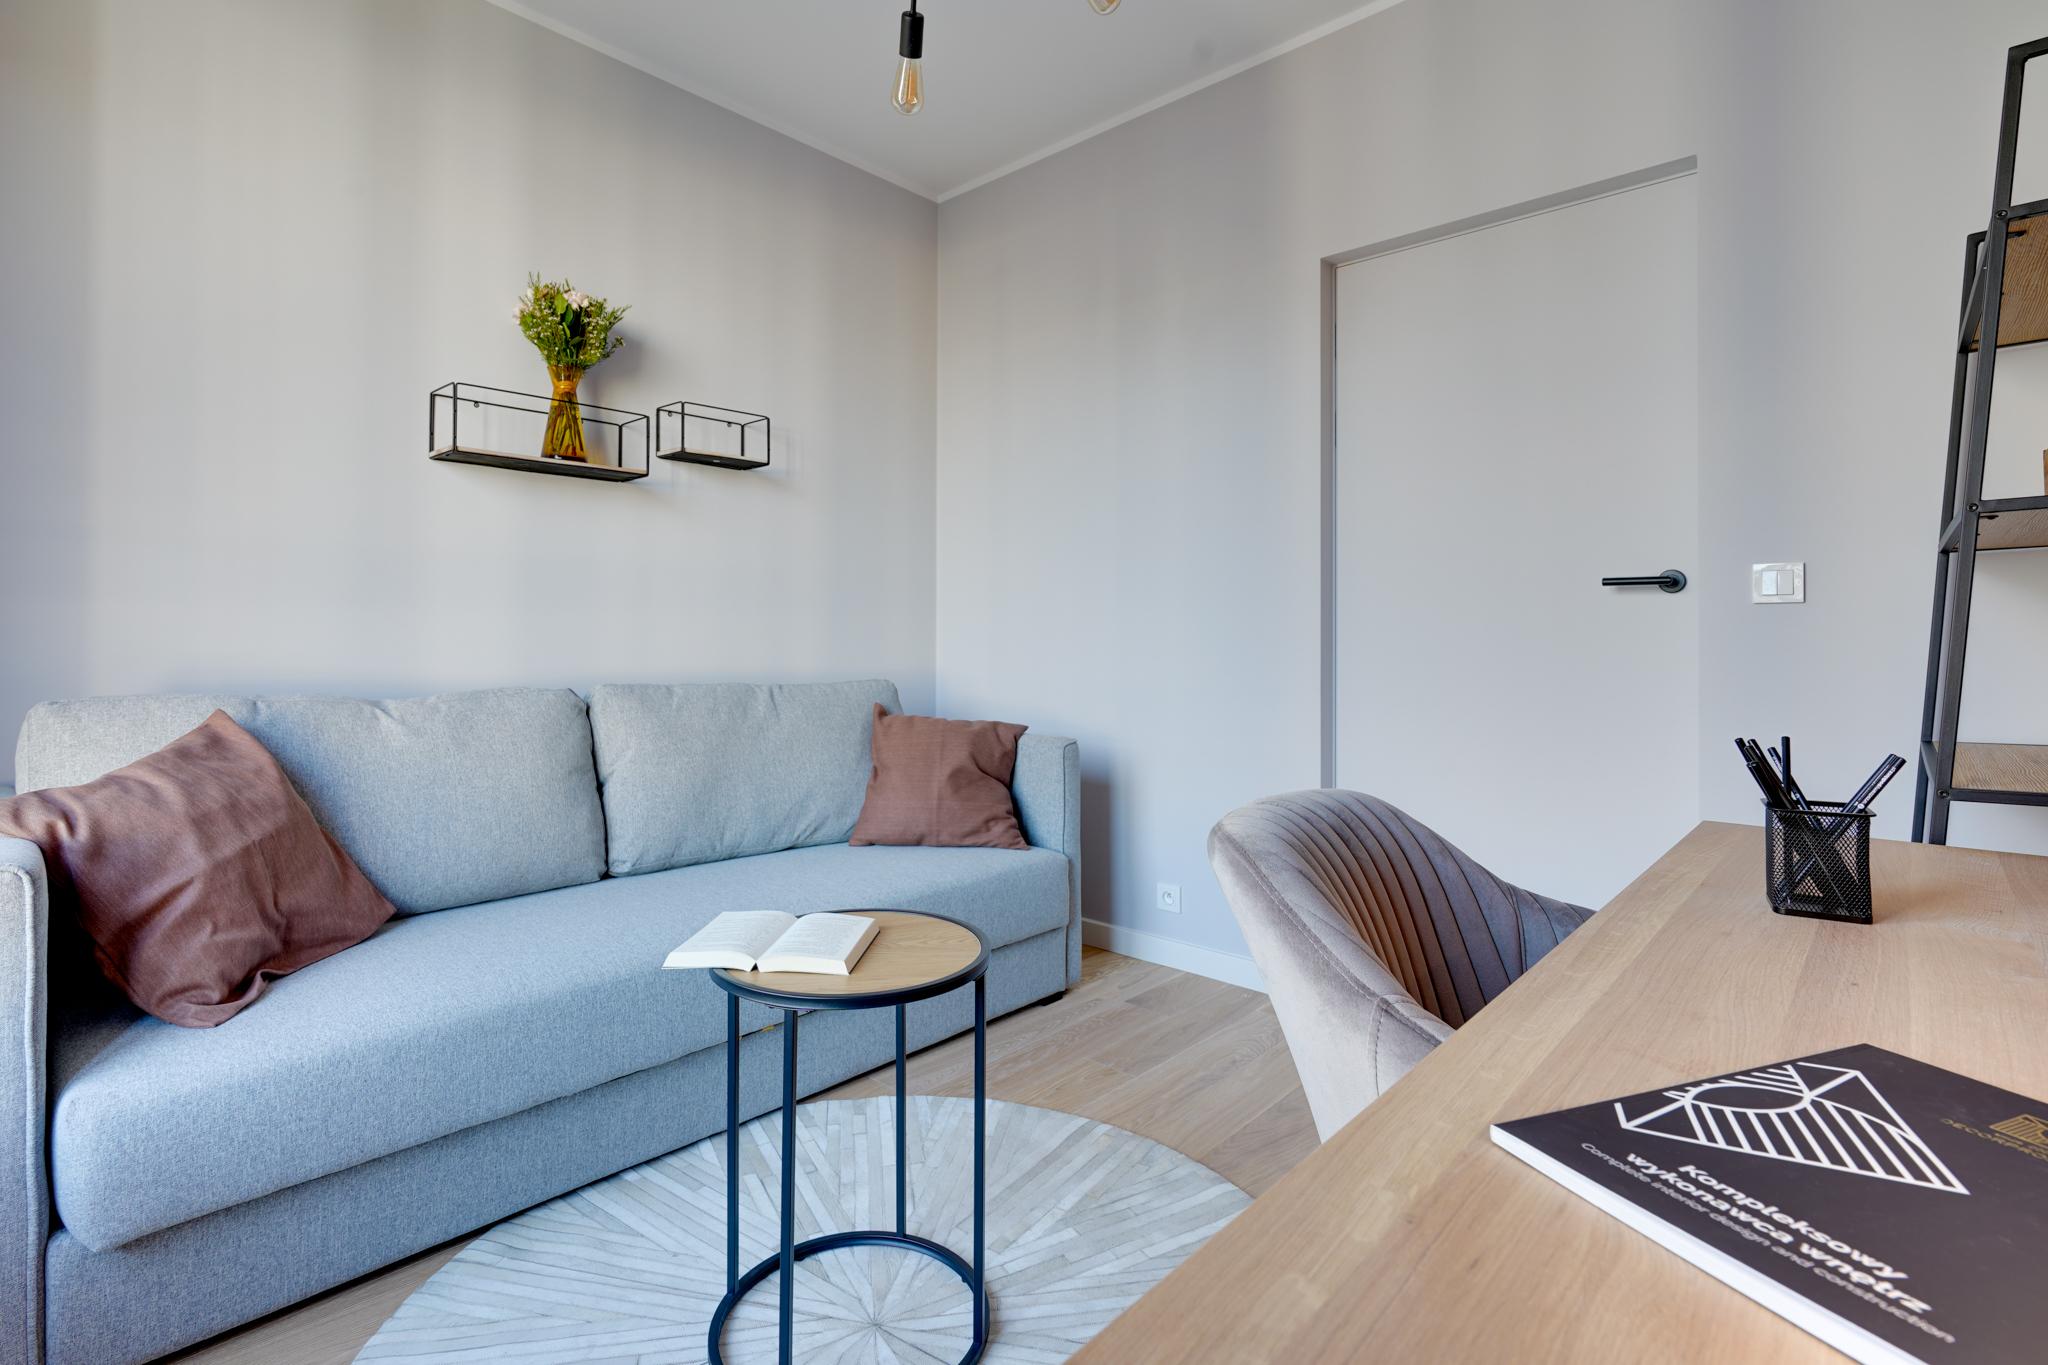 Mieszkanie w stylu loftowym - pakiet komfortowy